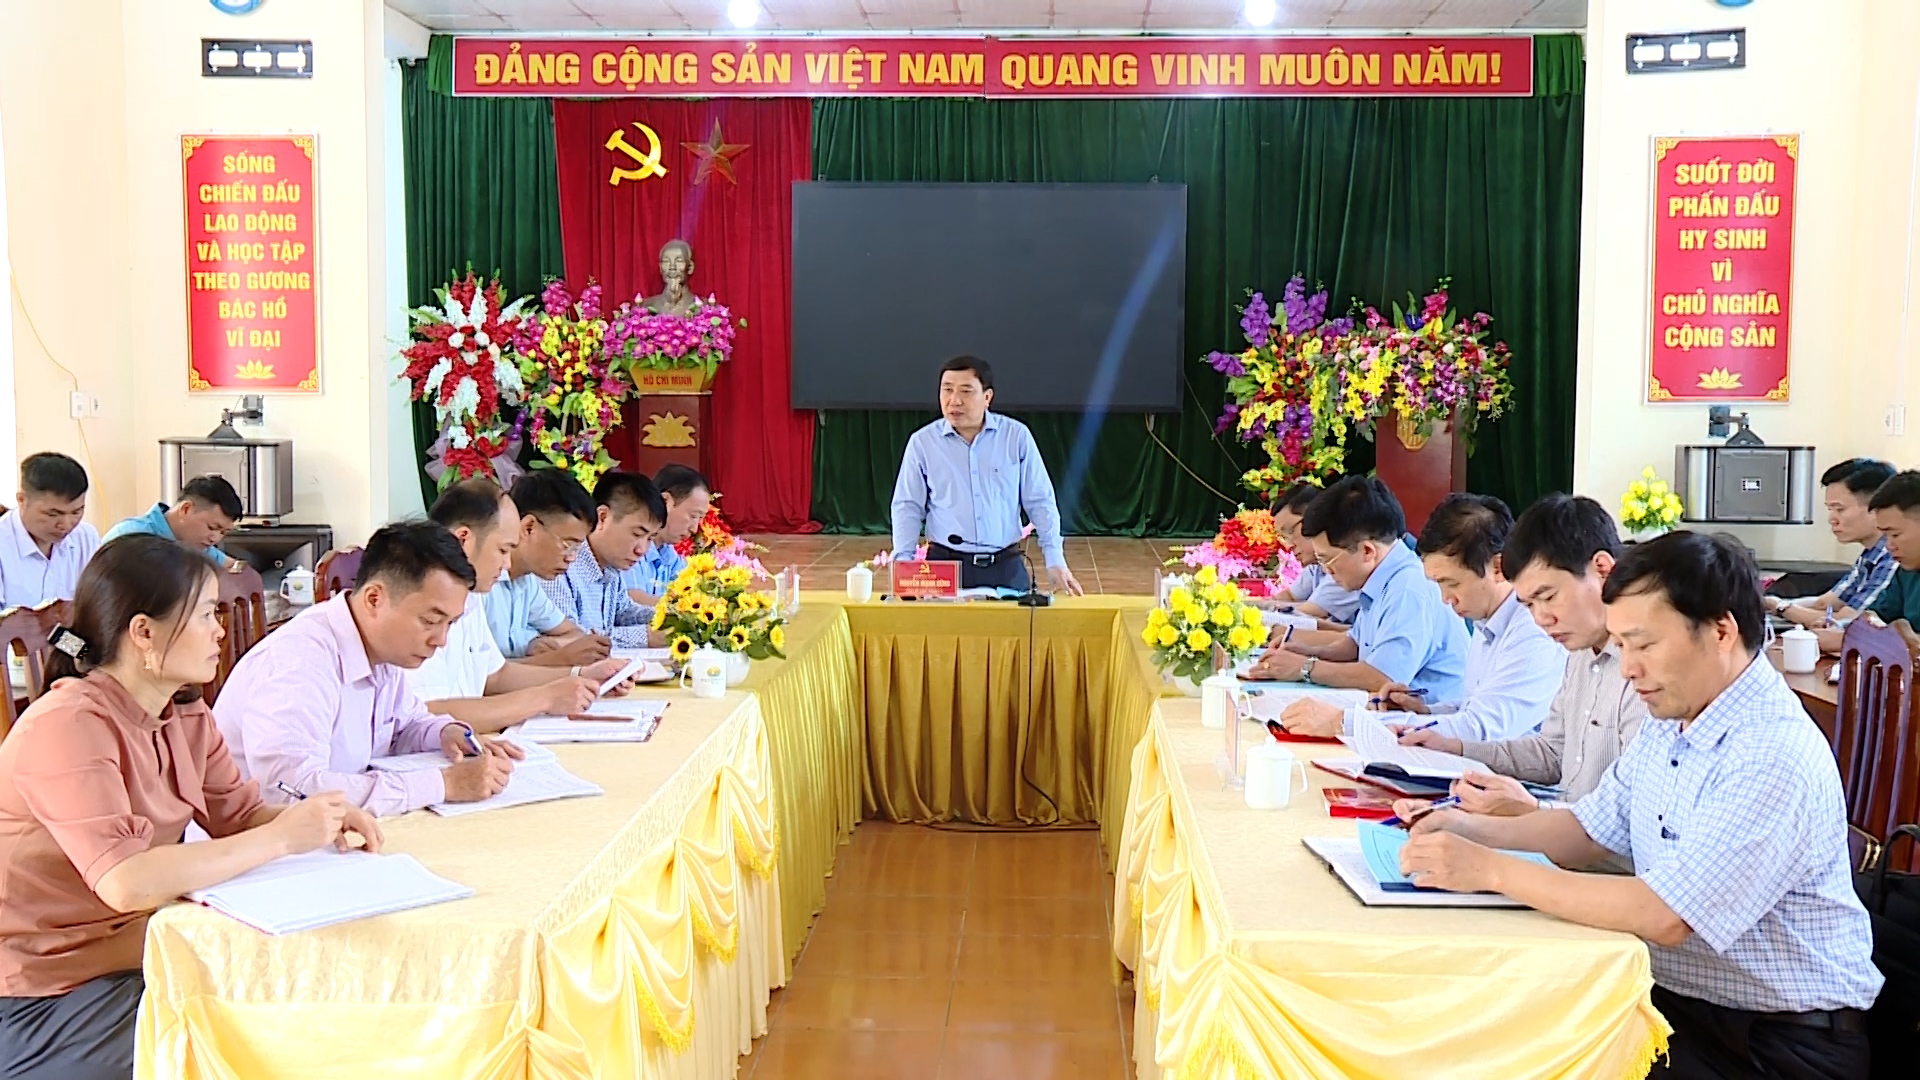 Phó Bí thư Tỉnh ủy Nguyễn Mạnh Dũng làm việc với Đảng ủy xã Thông Nguyên, huyện Hoàng Su Phì